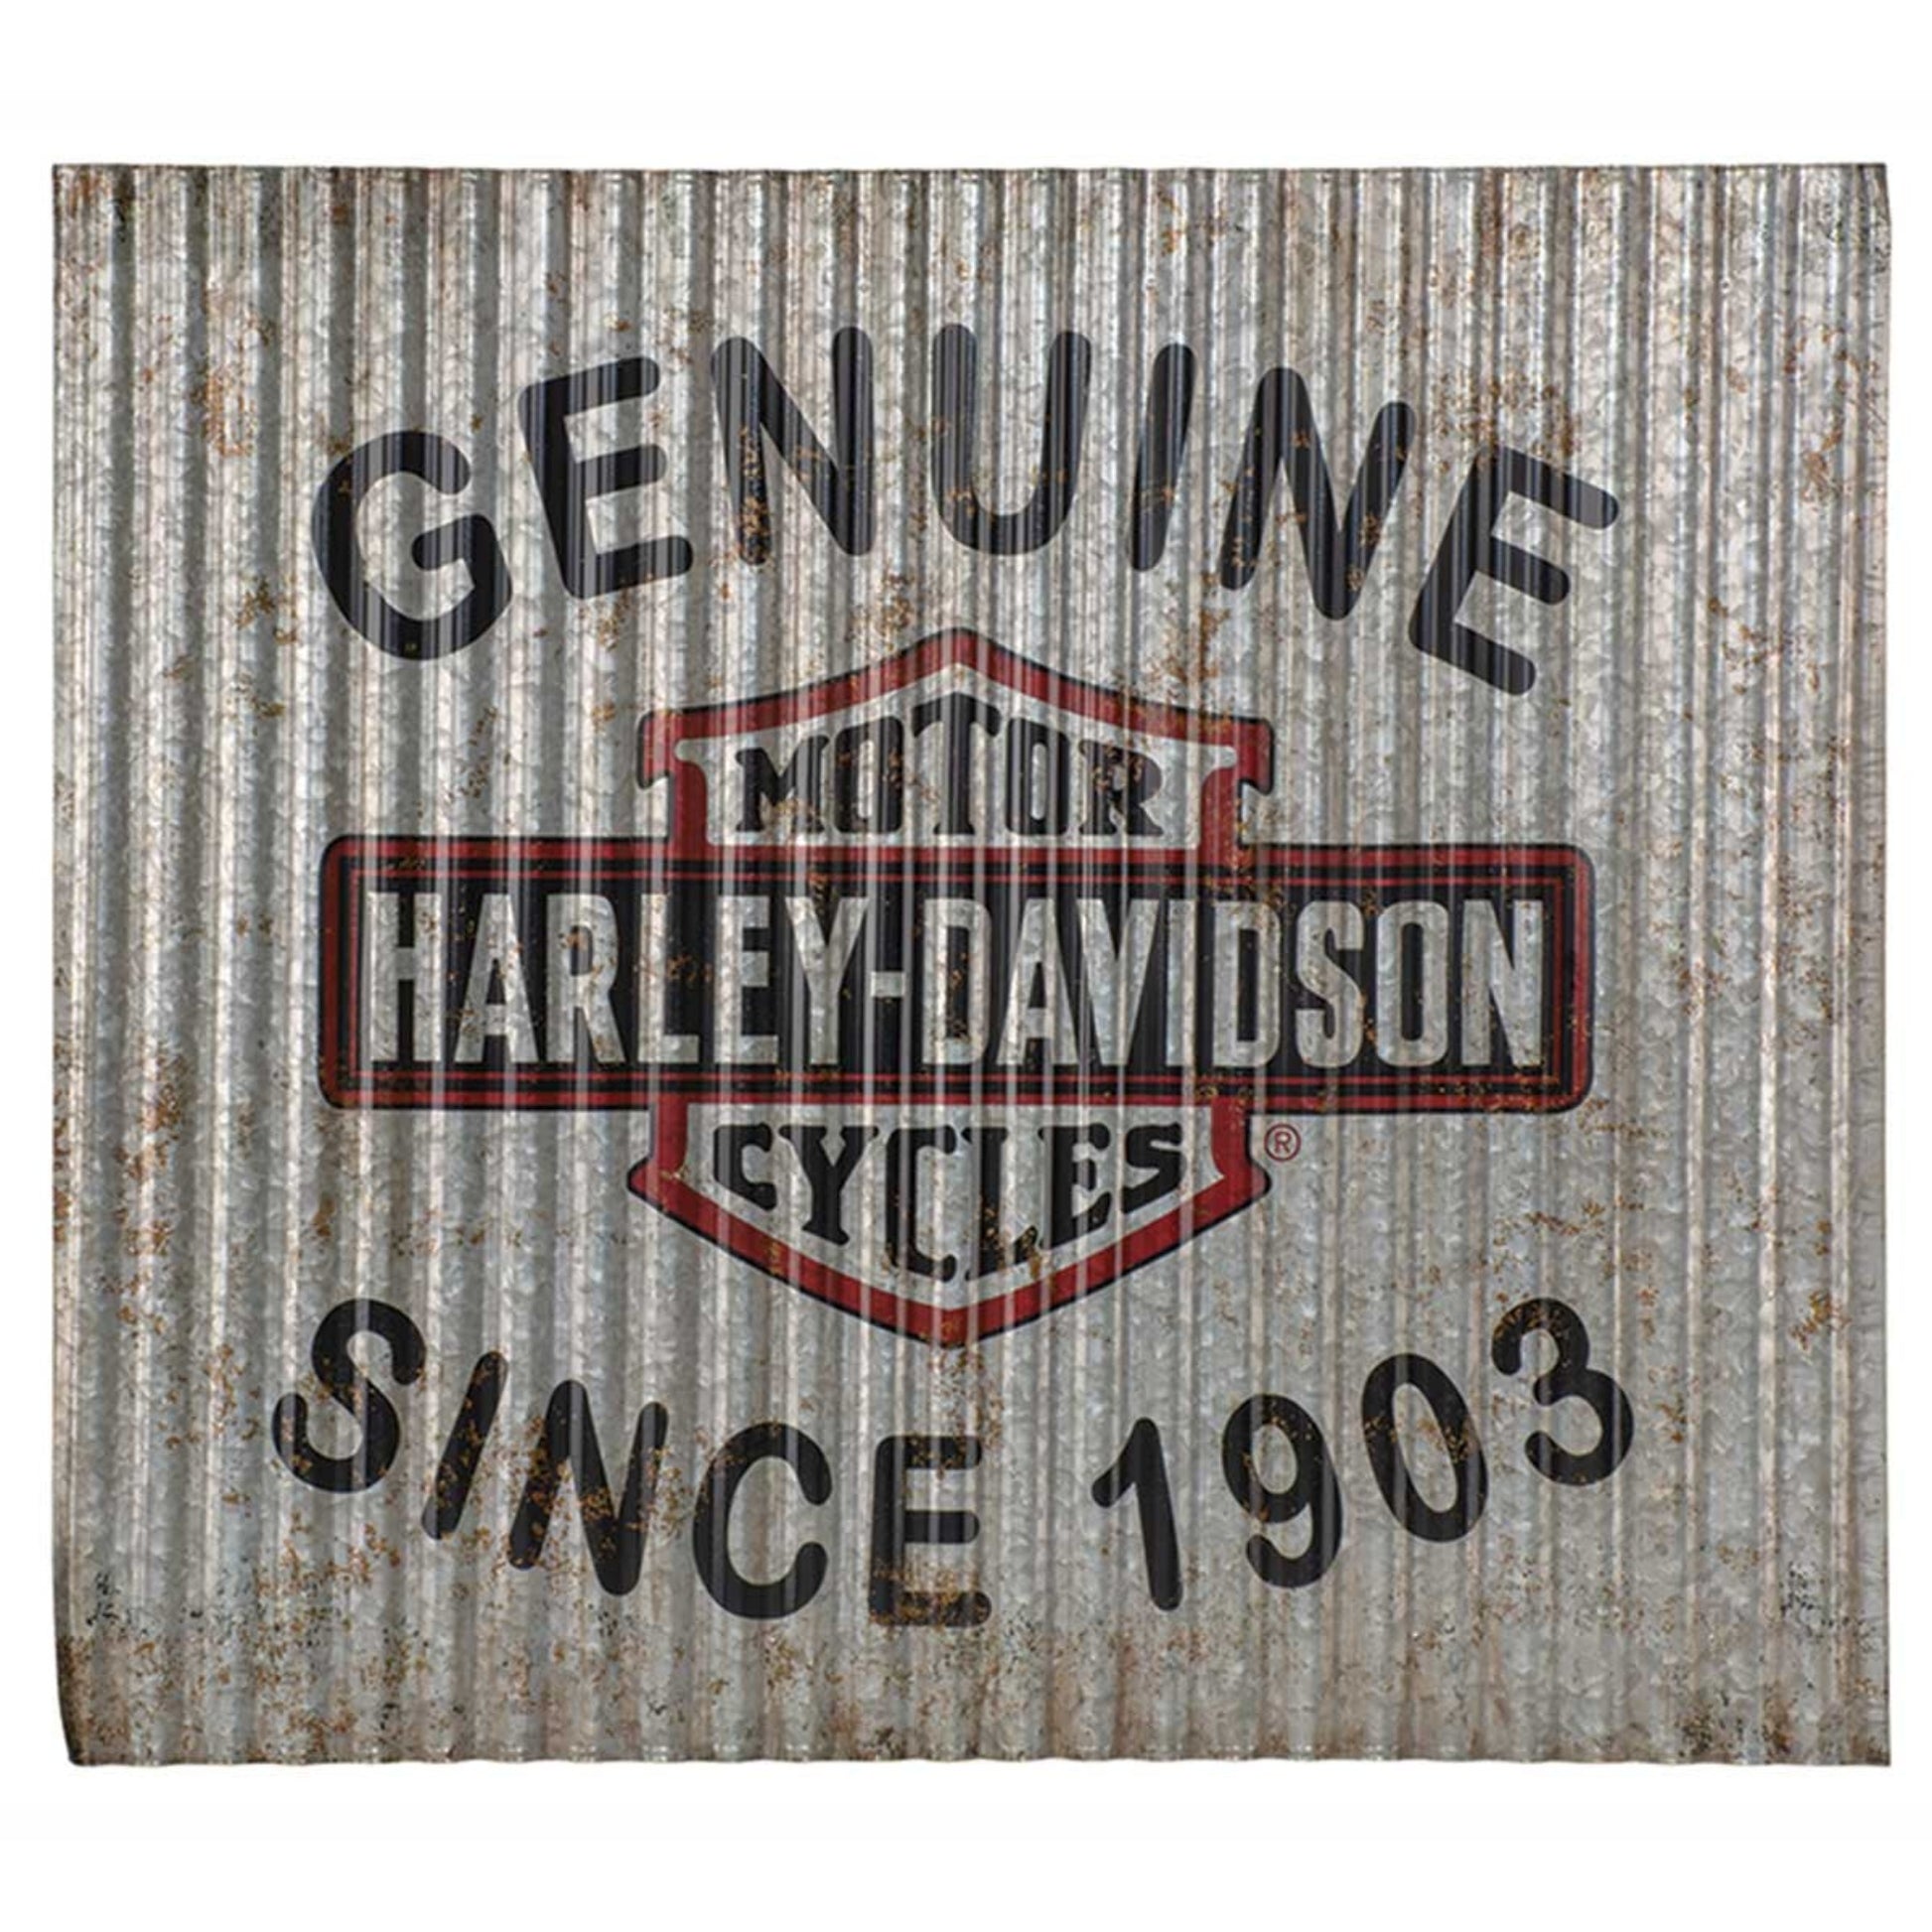 Genuine Harley Davidson antiqued Corrugated Metal Sign celebrating its legacy since 1903.